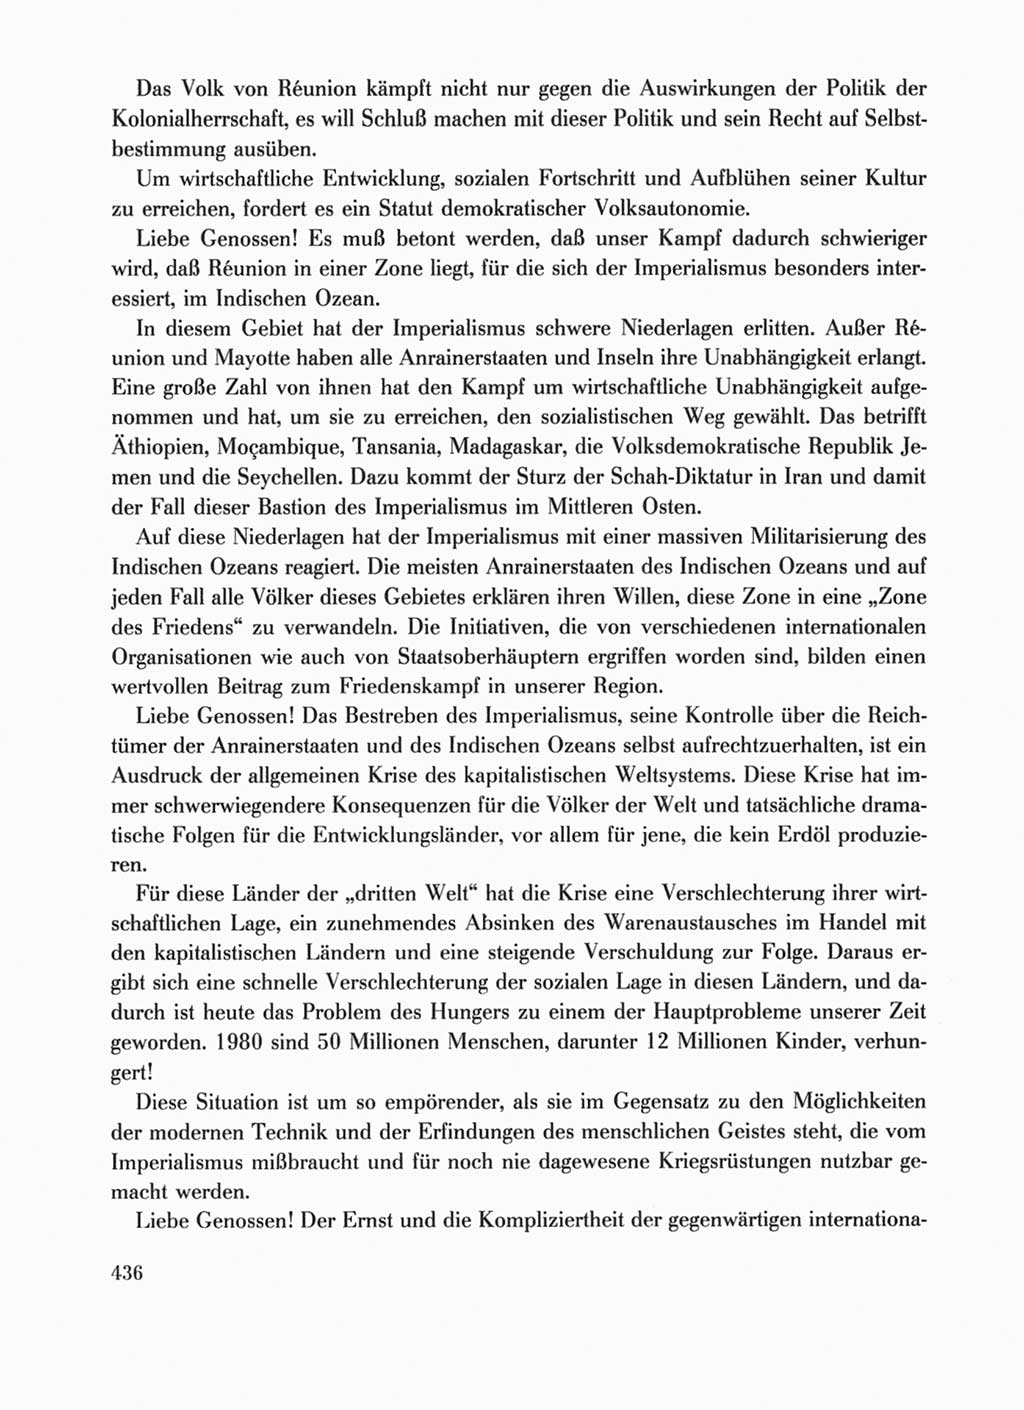 Protokoll der Verhandlungen des Ⅹ. Parteitages der Sozialistischen Einheitspartei Deutschlands (SED) [Deutsche Demokratische Republik (DDR)] 1981, Band 1, Seite 436 (Prot. Verh. Ⅹ. PT SED DDR 1981, Bd. 1, S. 436)